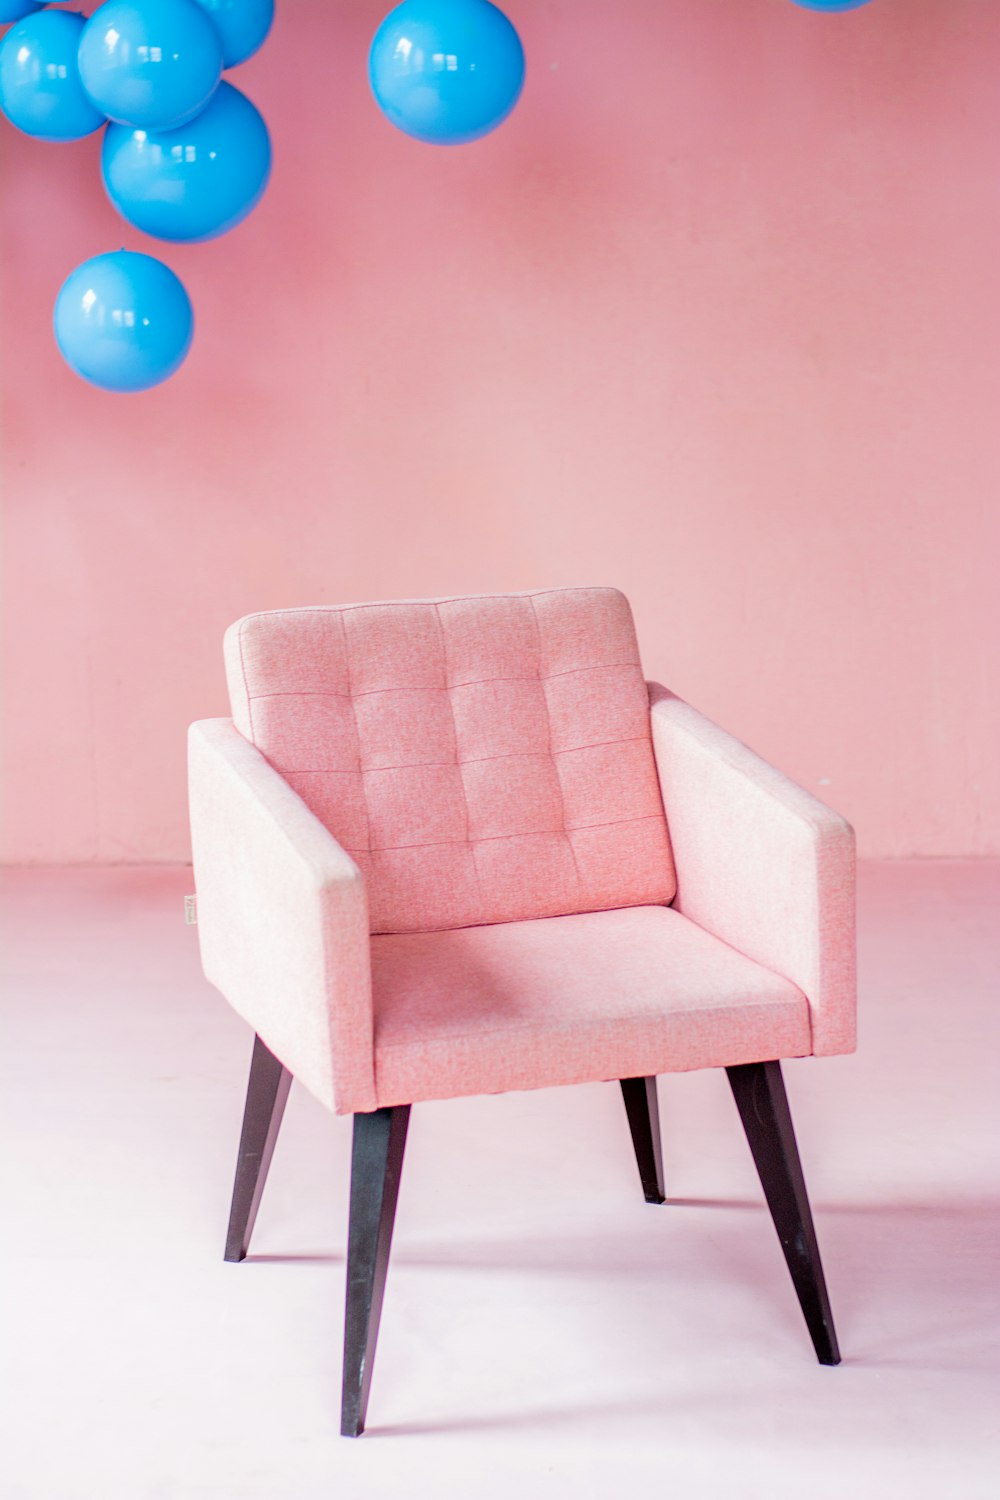 Koszt wymiany tapicerki krzesła - Poradnik | Abra Meble